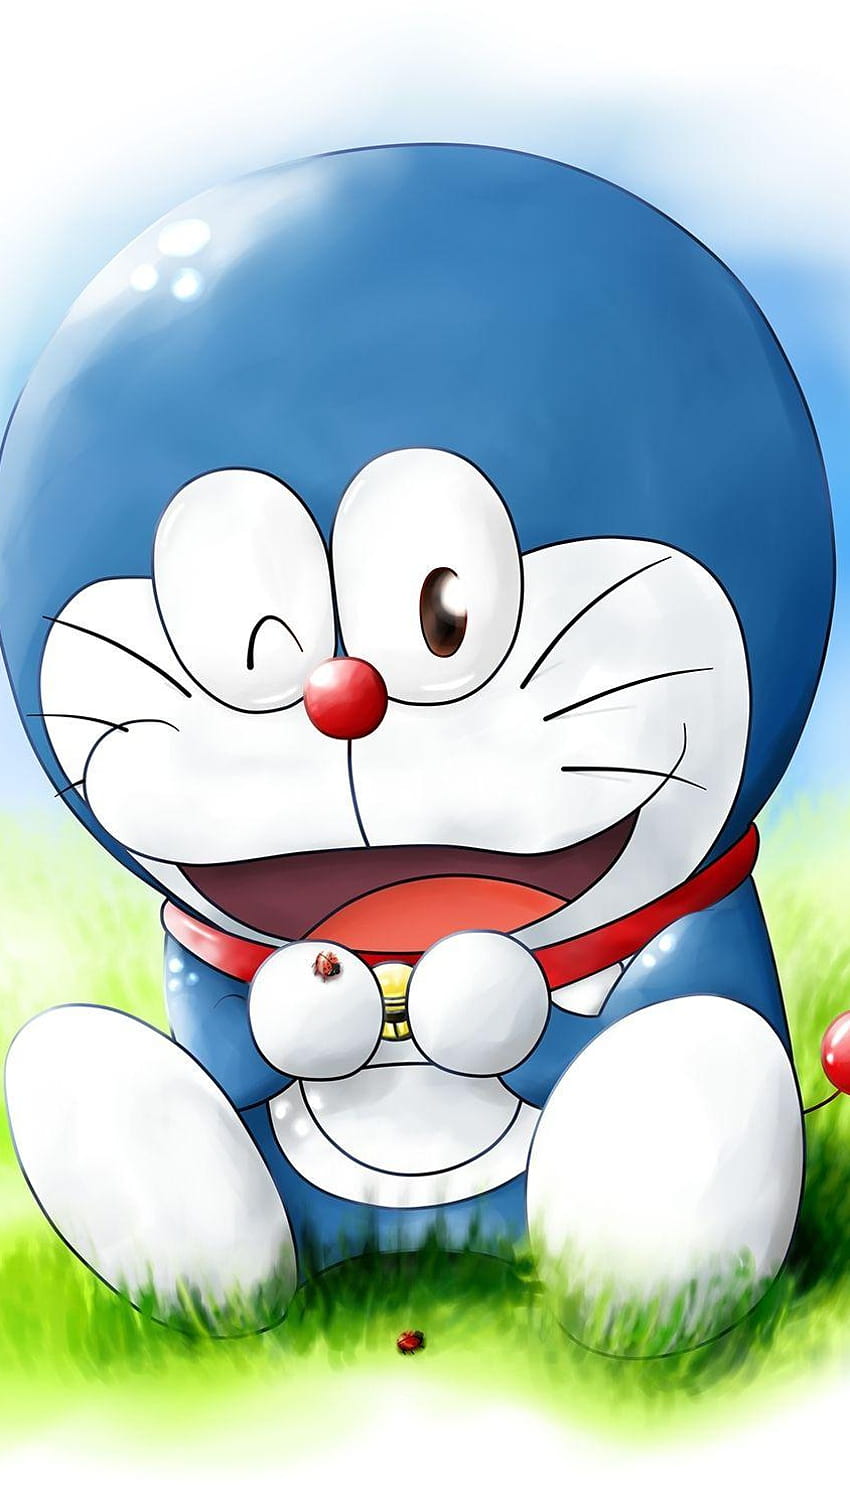 Game PC Doraemon - tận hưởng những giờ phút thư giãn với trò chơi PC Doraemon vô cùng thú vị. Bạn sẽ được trải nghiệm cuộc phiêu lưu tuyệt vời cùng với chú mèo máy và những người bạn thân thiết. Hãy cùng khám phá thế giới Doraemon của bạn!